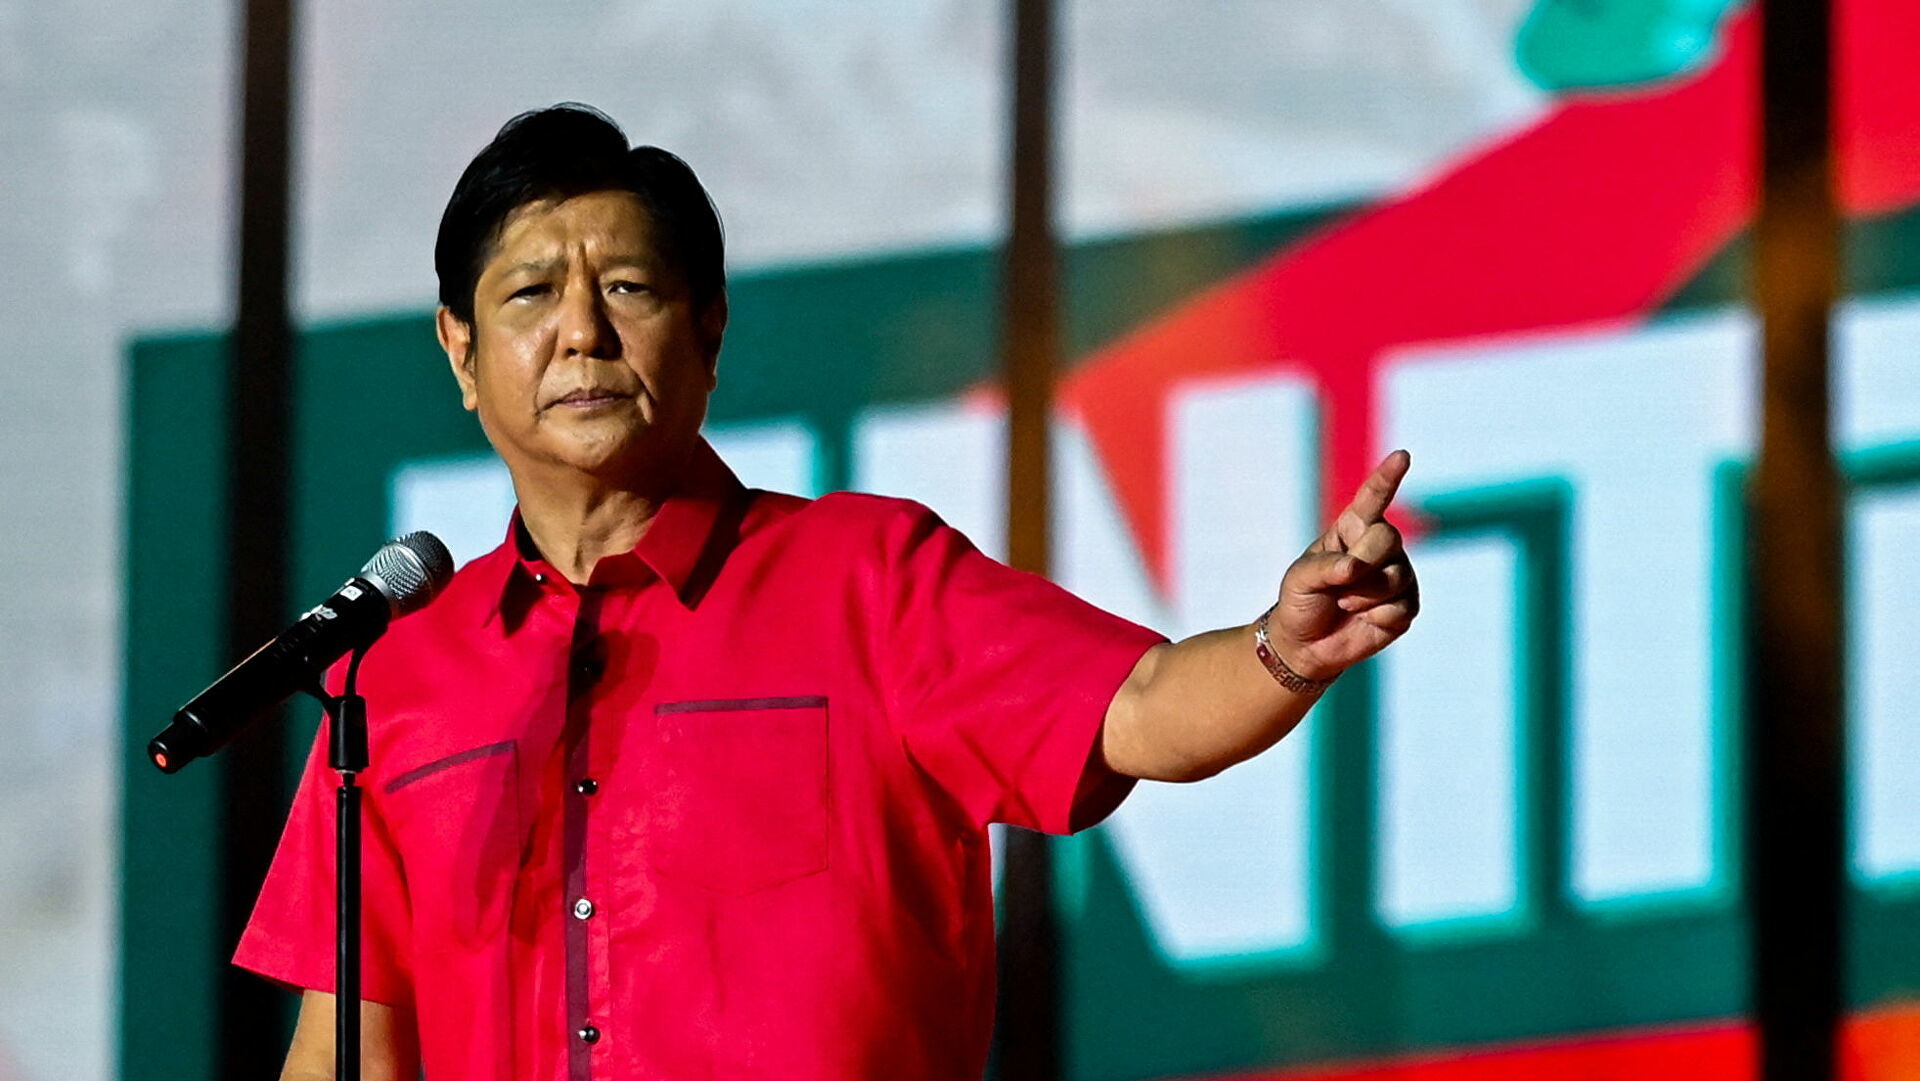 菲律宾大选下周投票 小马科斯民调领先